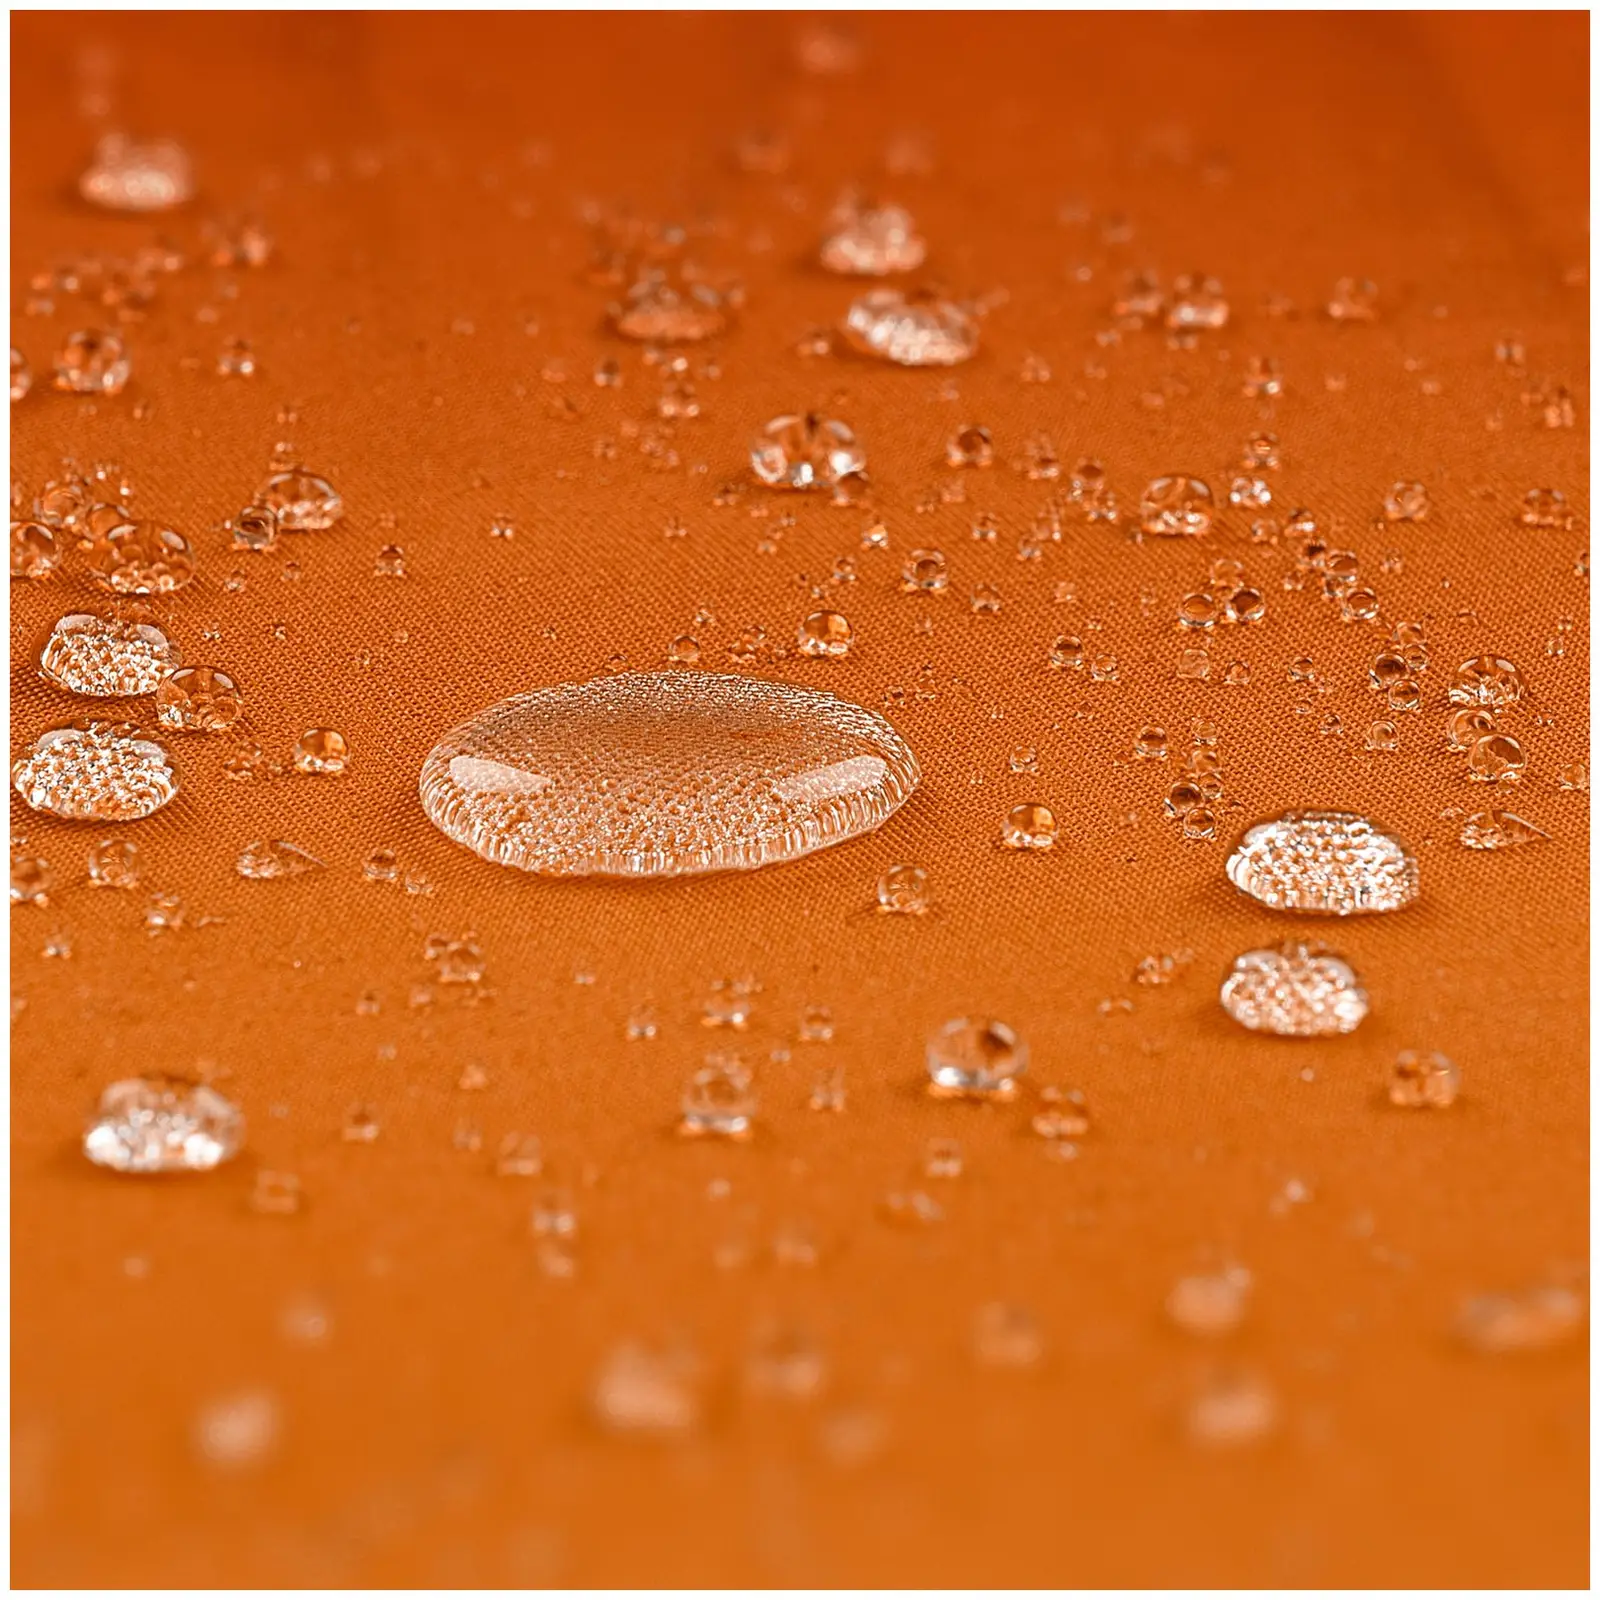 Parasol ogrodowy - pomarańczowy - prostokątny - 200 x 300 cm - uchylny